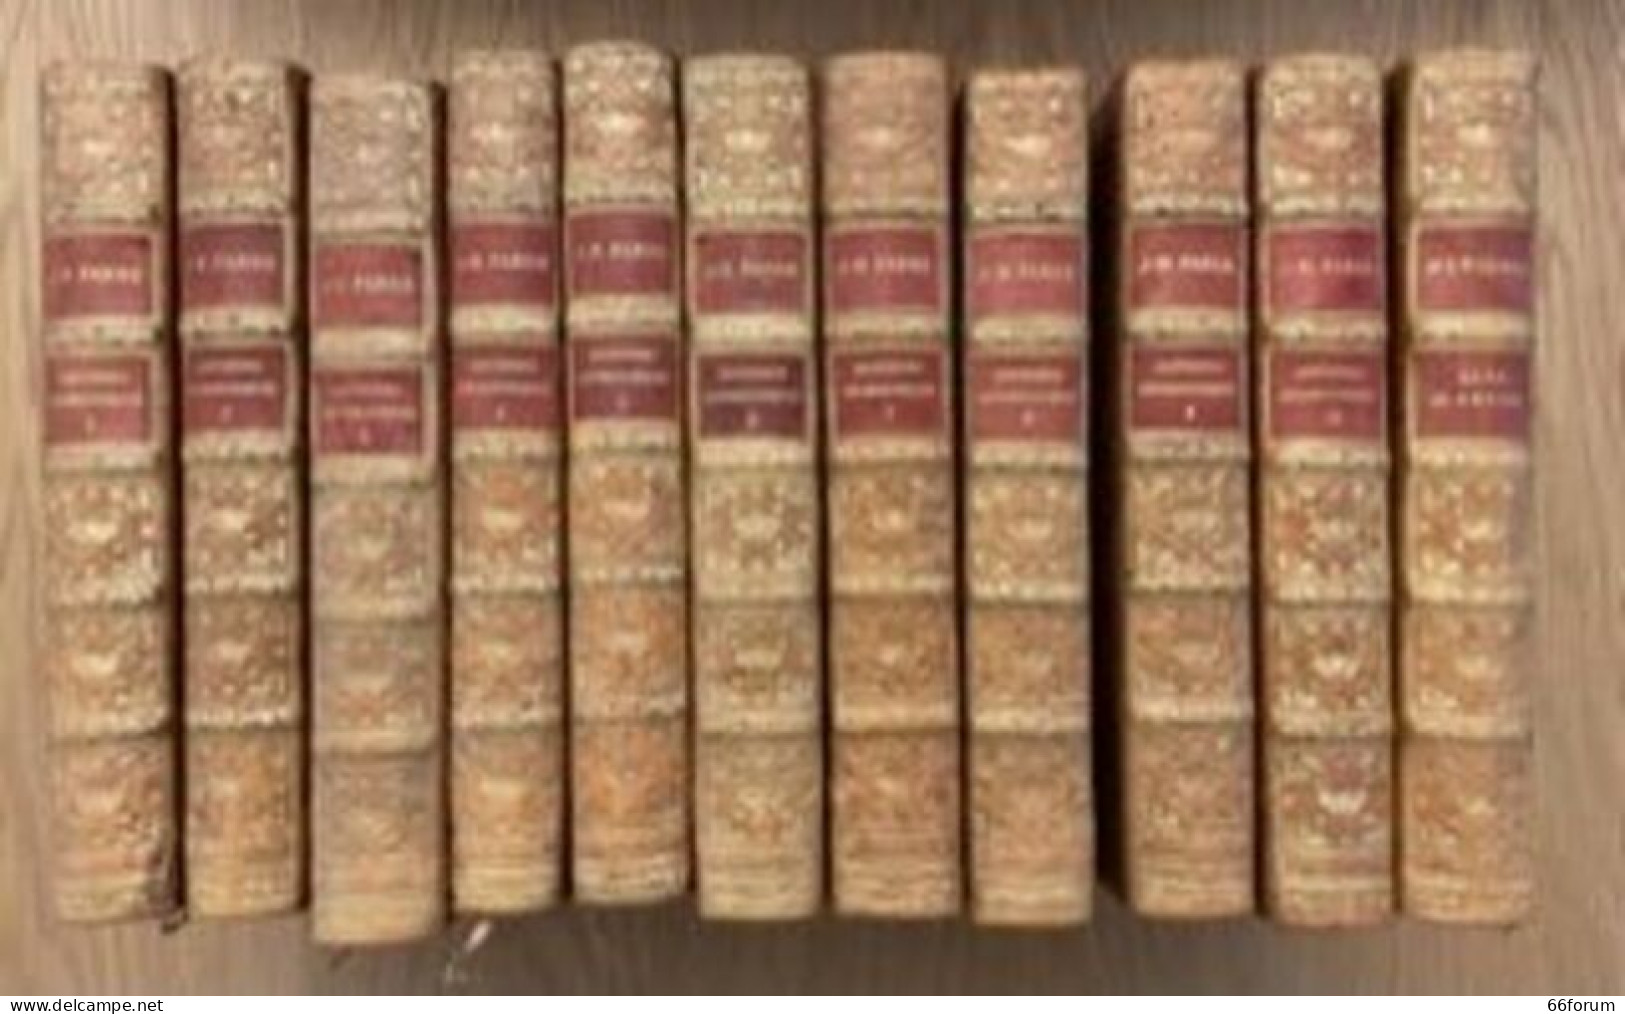 Souvenirs Entomologiques En 10 Volumes édition Définitive Illustrée Suivi De La Vie De J.-H. Fabre - Geschiedenis